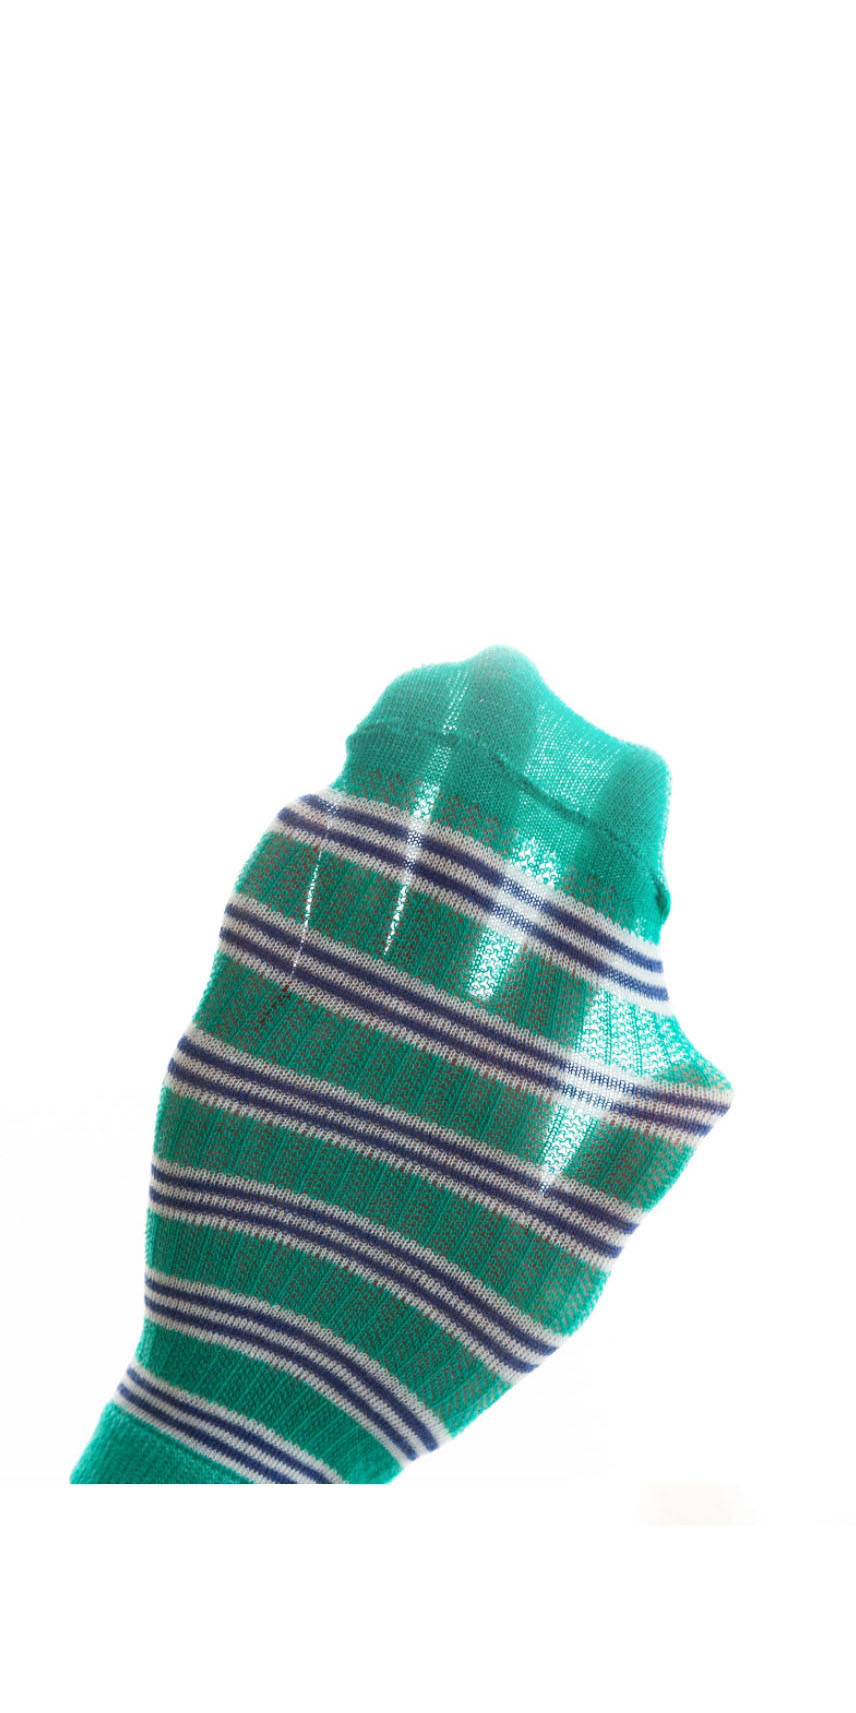 Fashion Small Excavator [breathable Mesh 5 Pairs] Cotton Printed Breathable Mesh Kids Socks,Fashion Socks